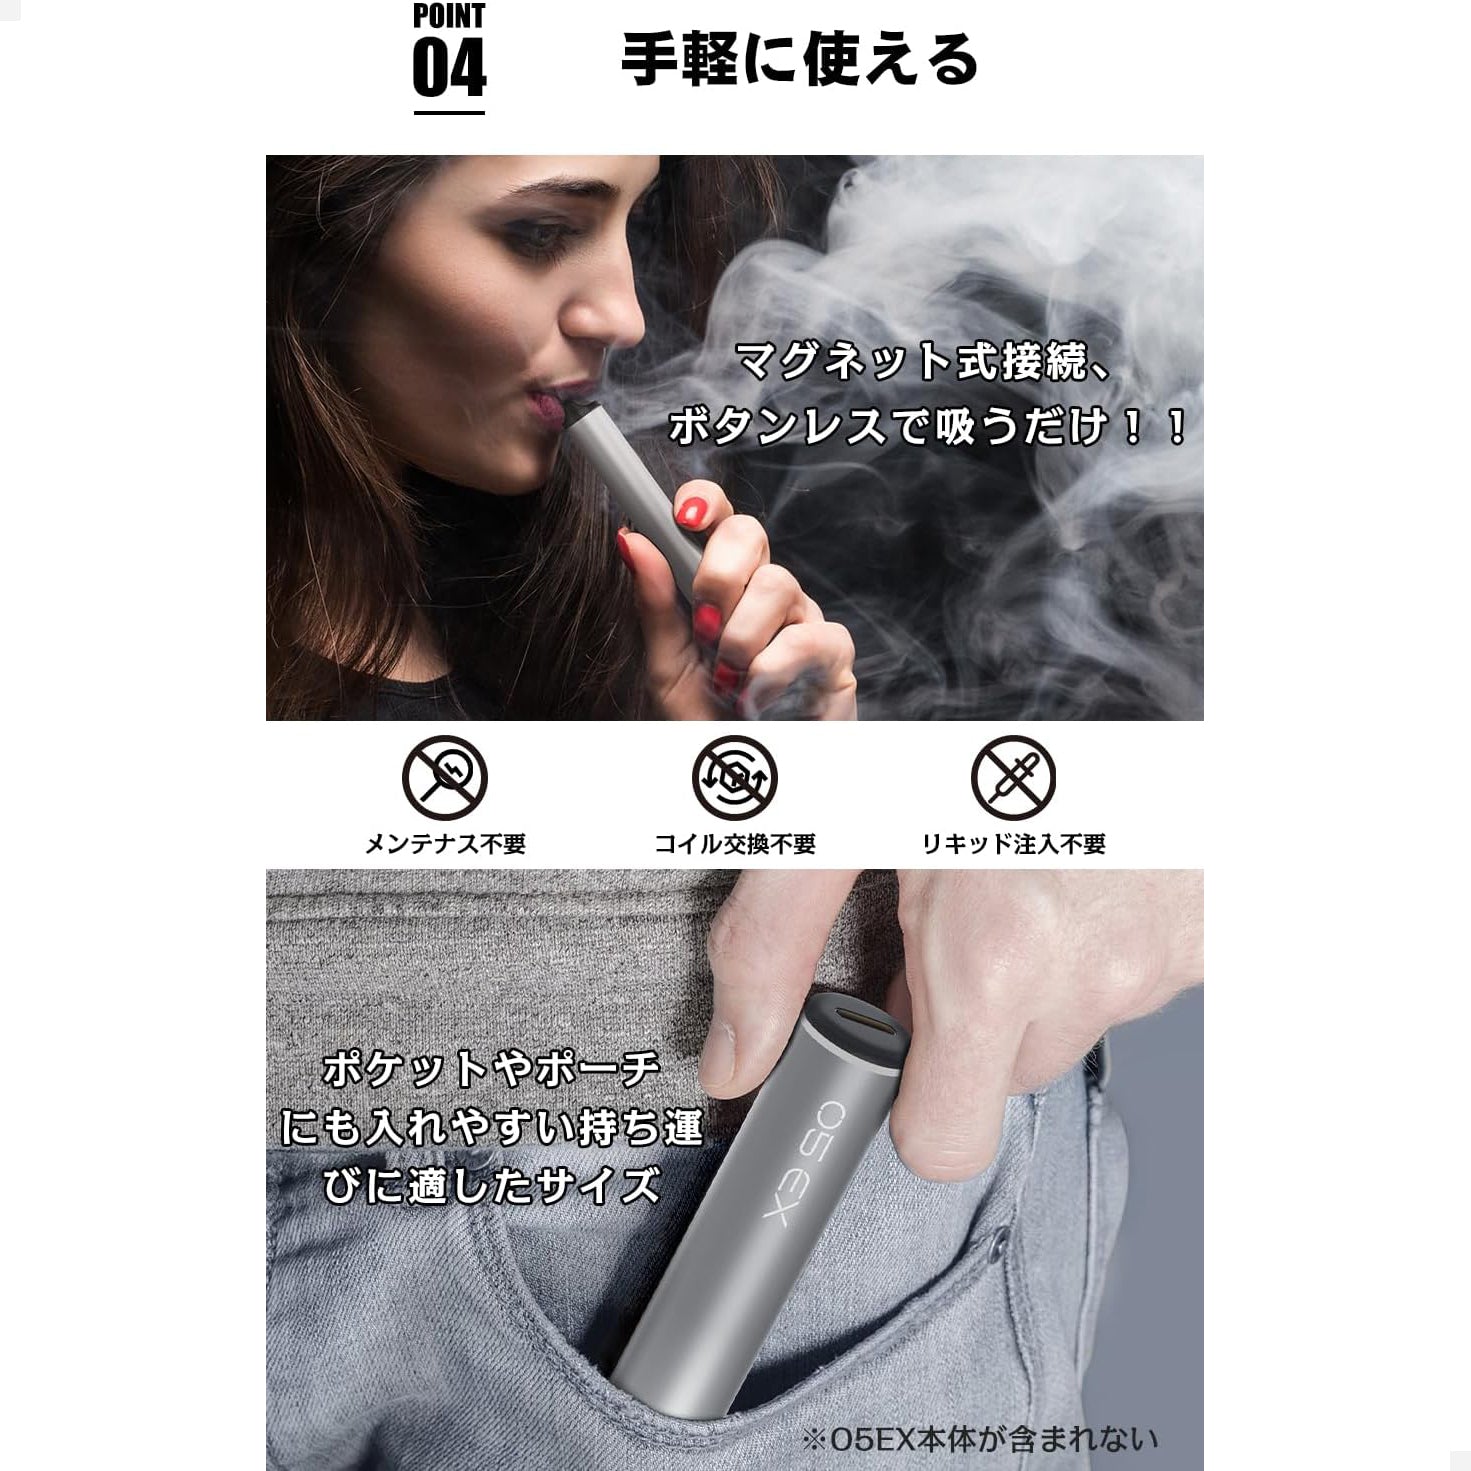 KINOE O5 EX 電子タバコ 交換用ポッド （クラシックタバコ）